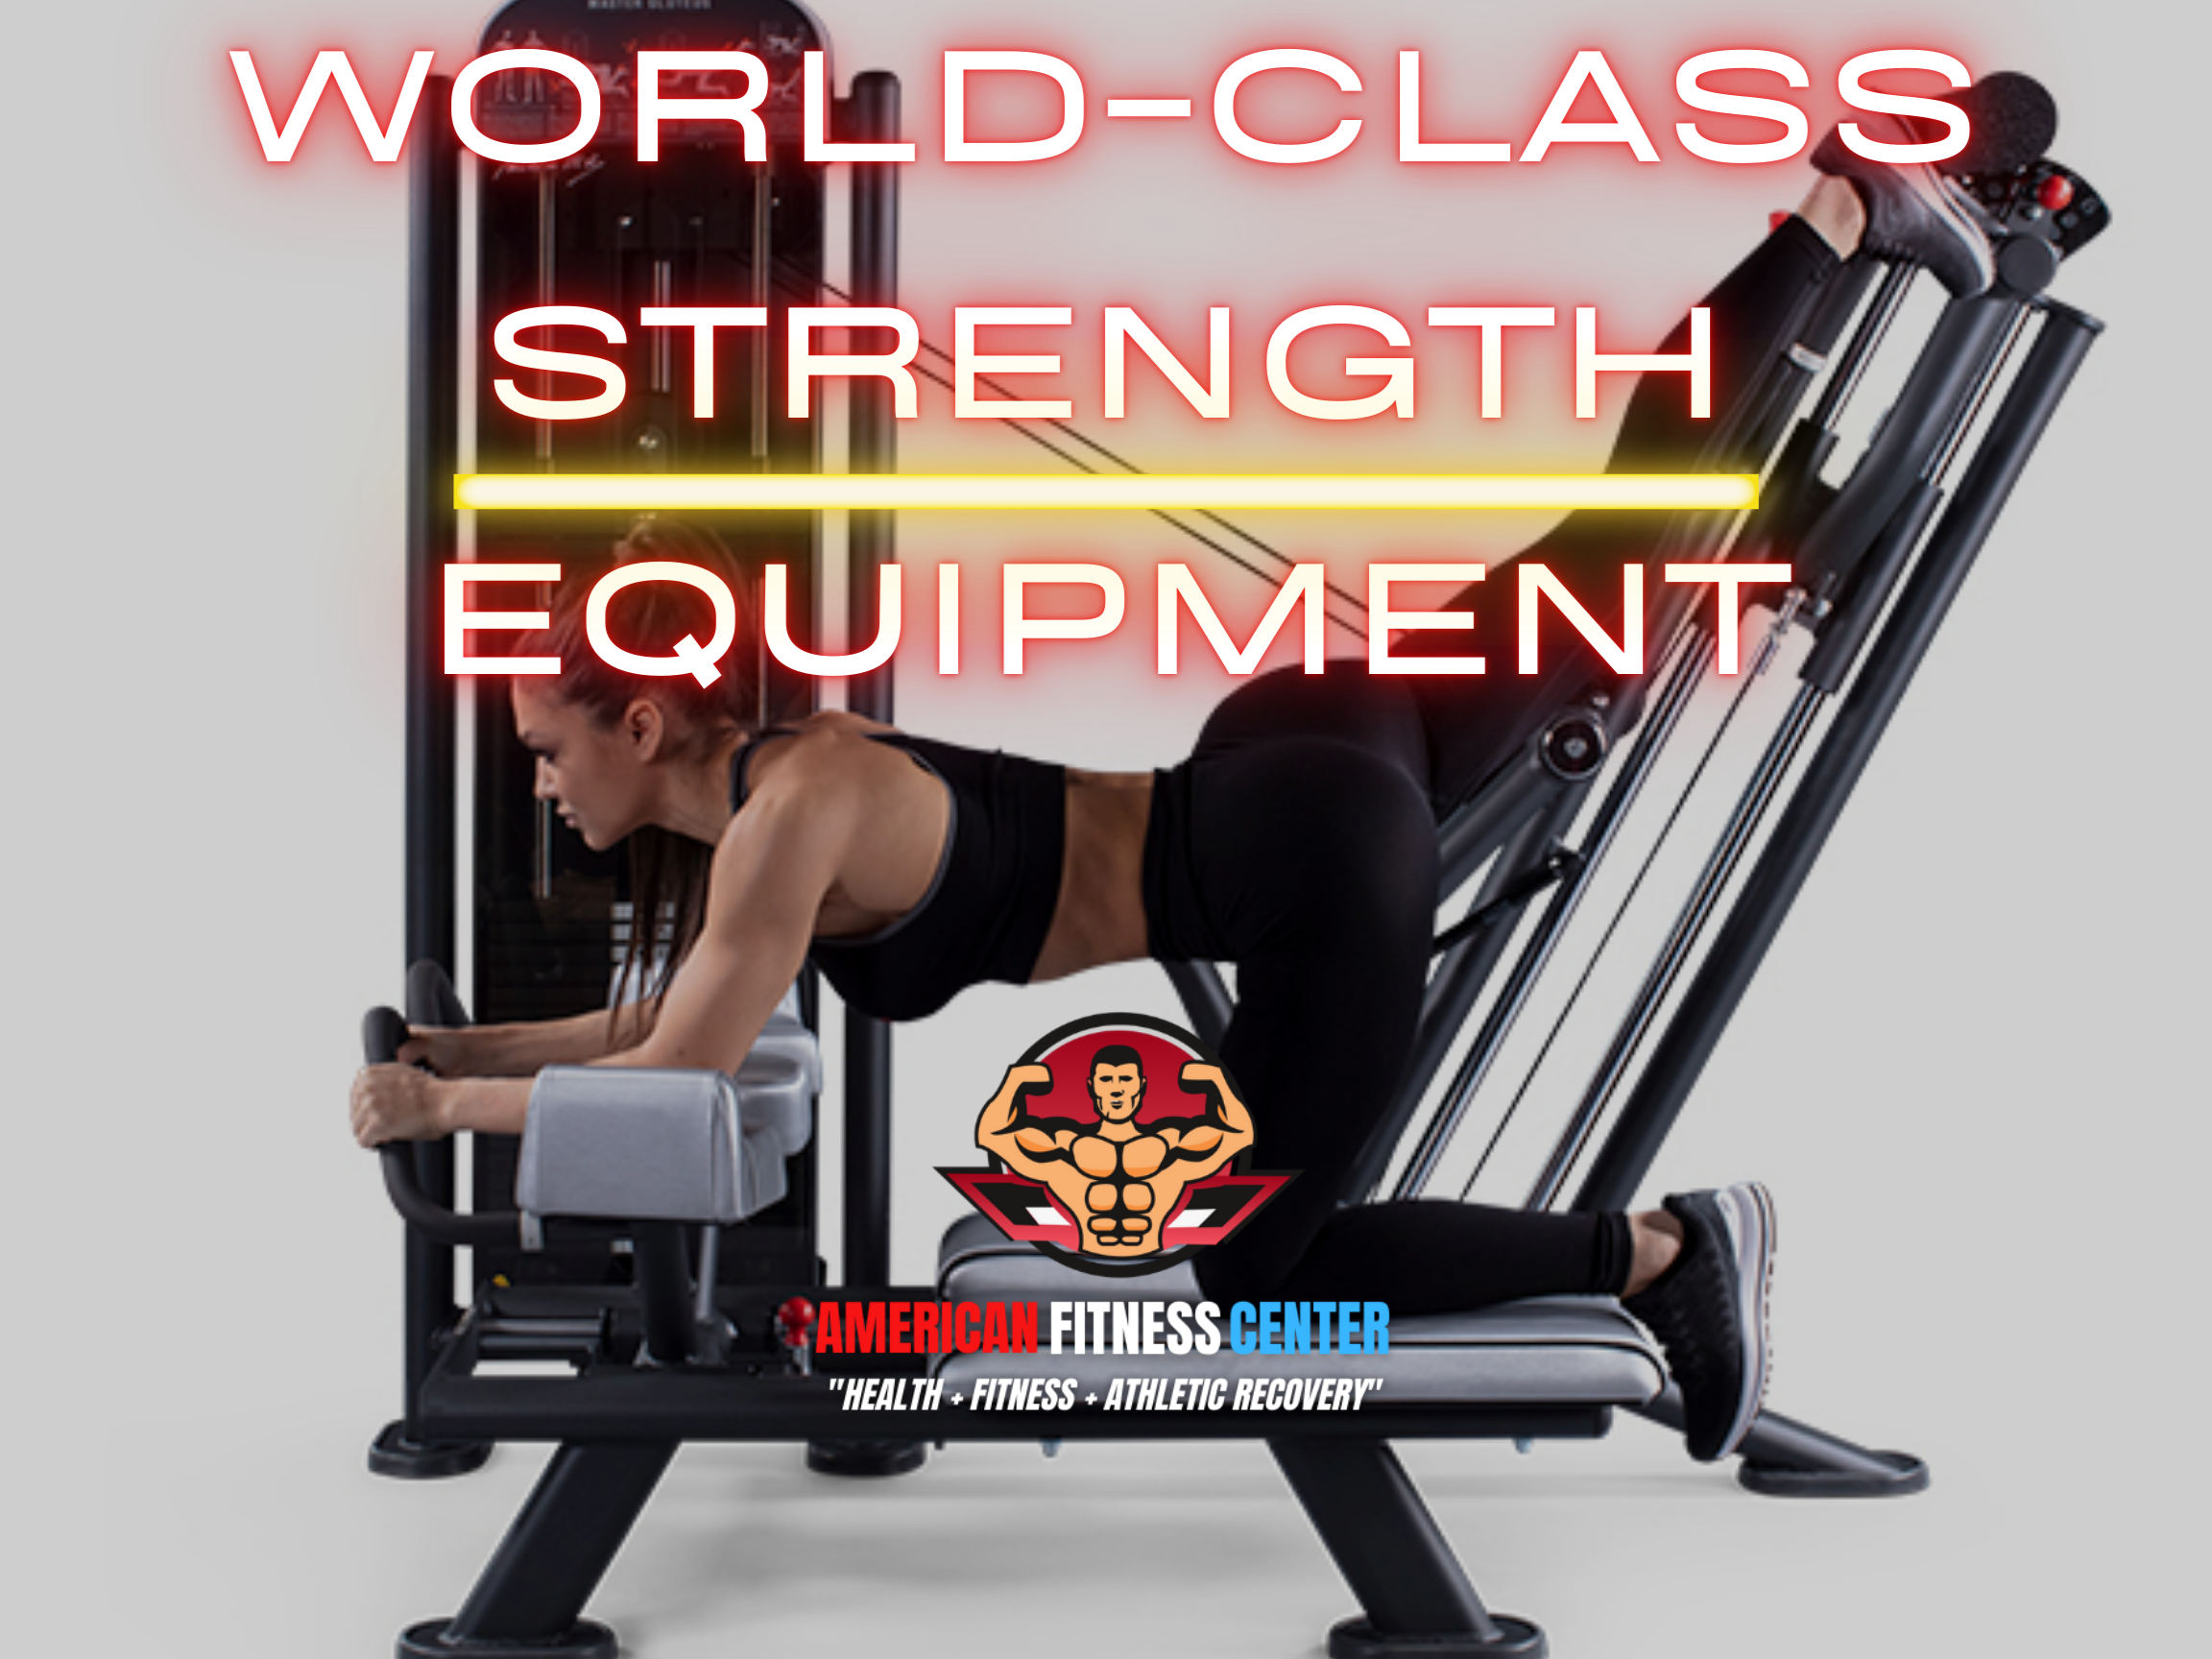 World-Class-Strength-Equipment-Near-Me-in-Alpharetta-GA-American-Fitness-Center-Alpharetta